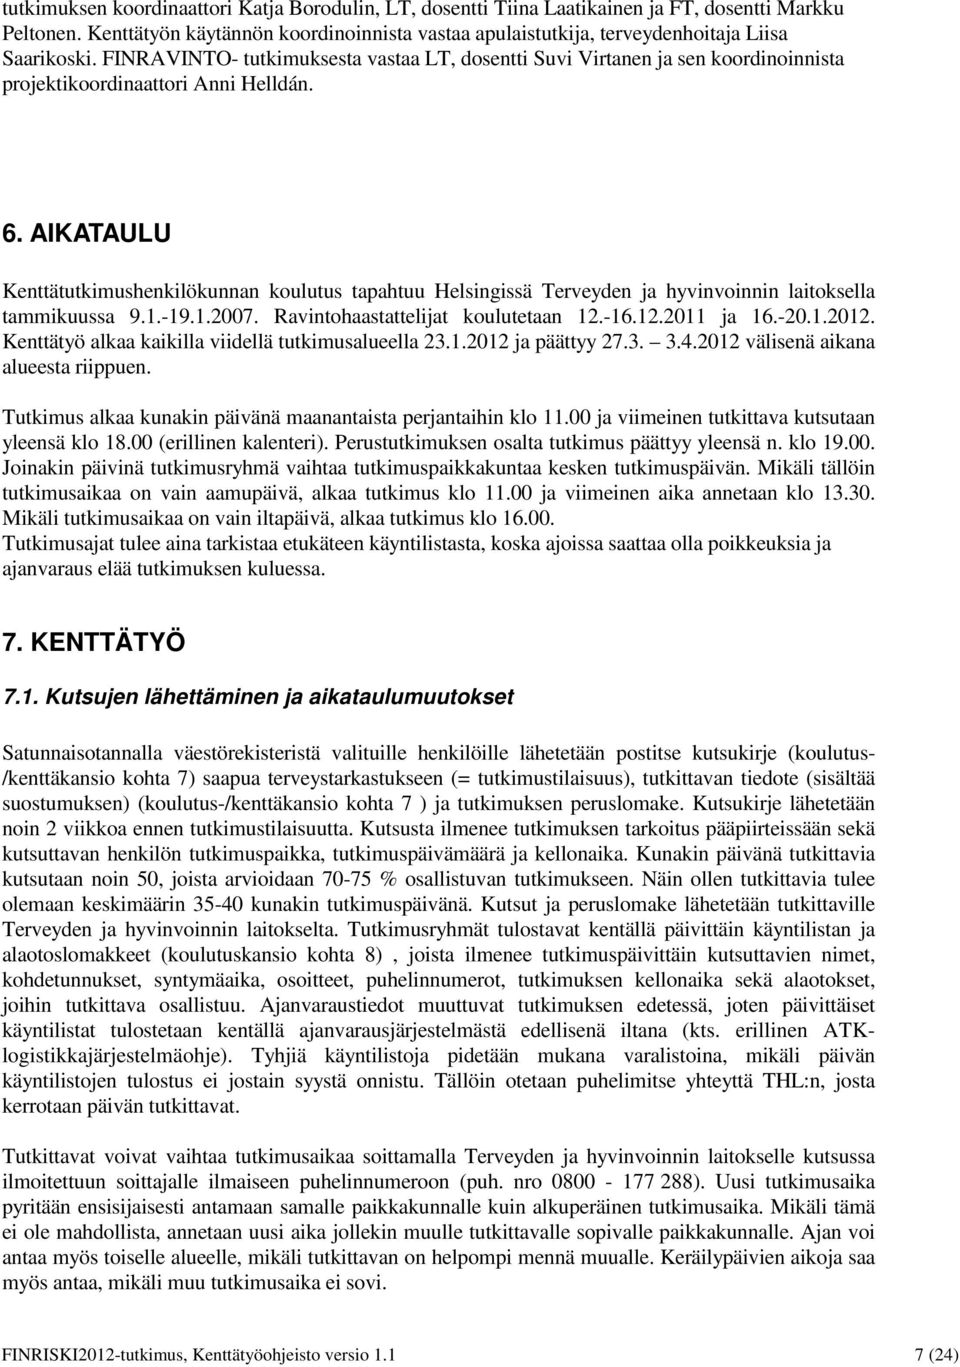 FINRAVINTO- tutkimuksesta vastaa LT, dosentti Suvi Virtanen ja sen koordinoinnista projektikoordinaattori Anni Helldán. 6.